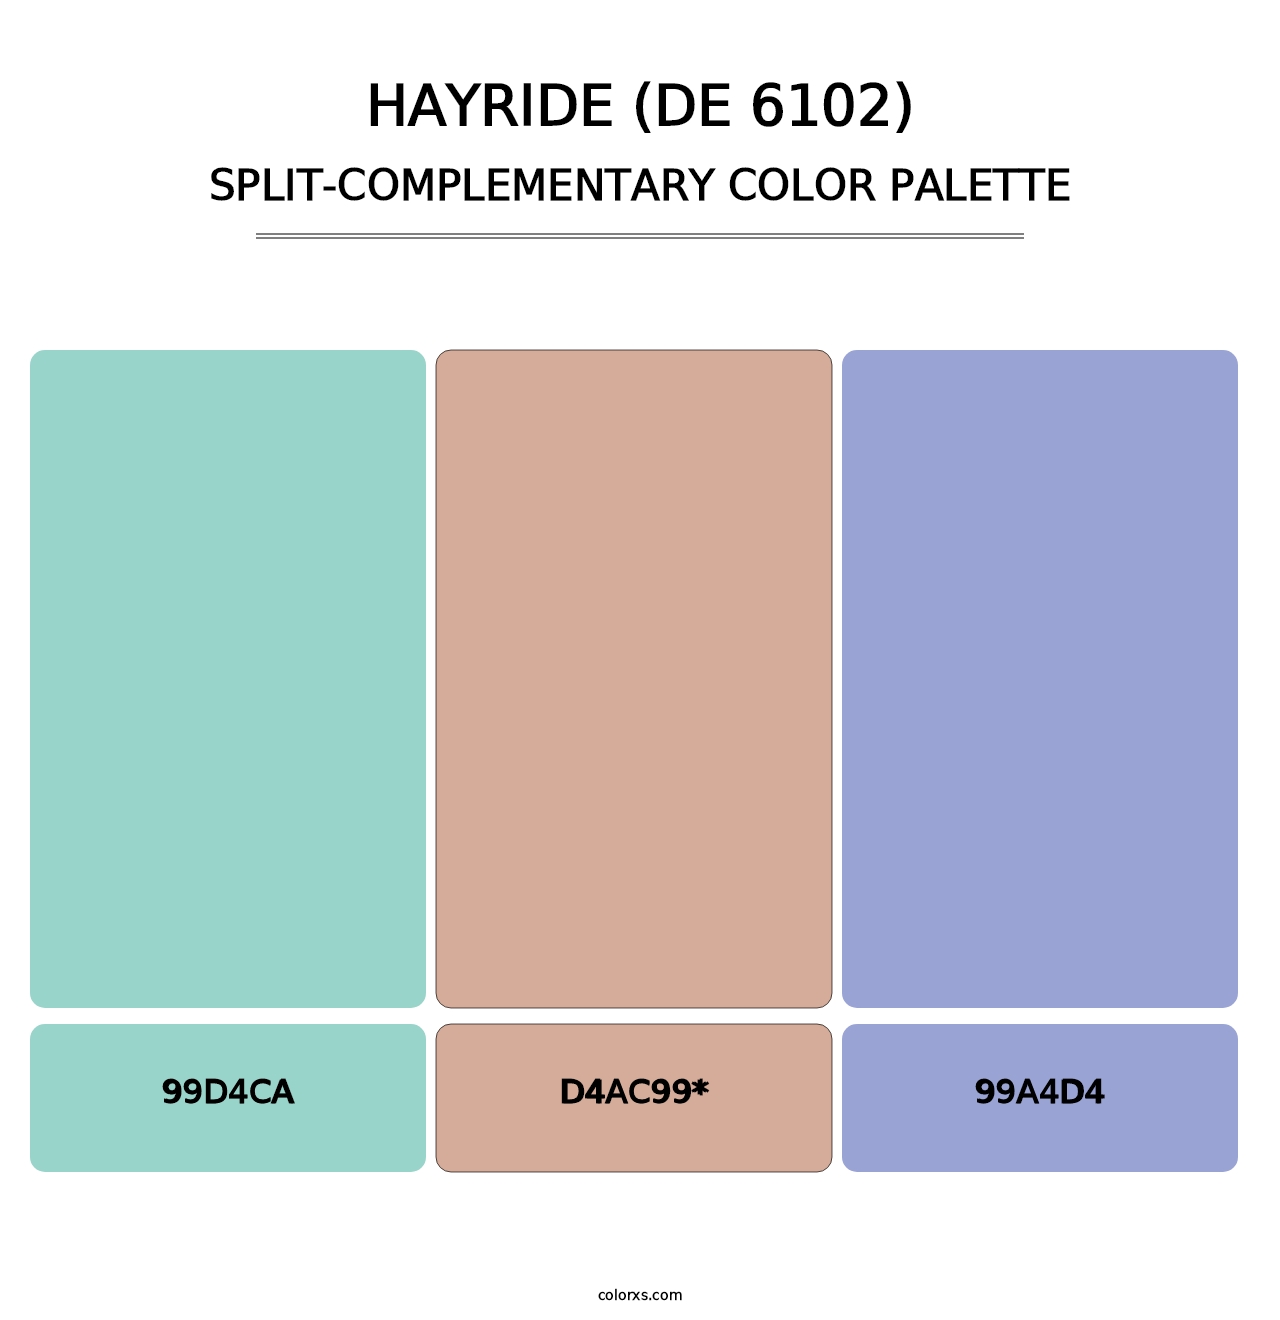 Hayride (DE 6102) - Split-Complementary Color Palette